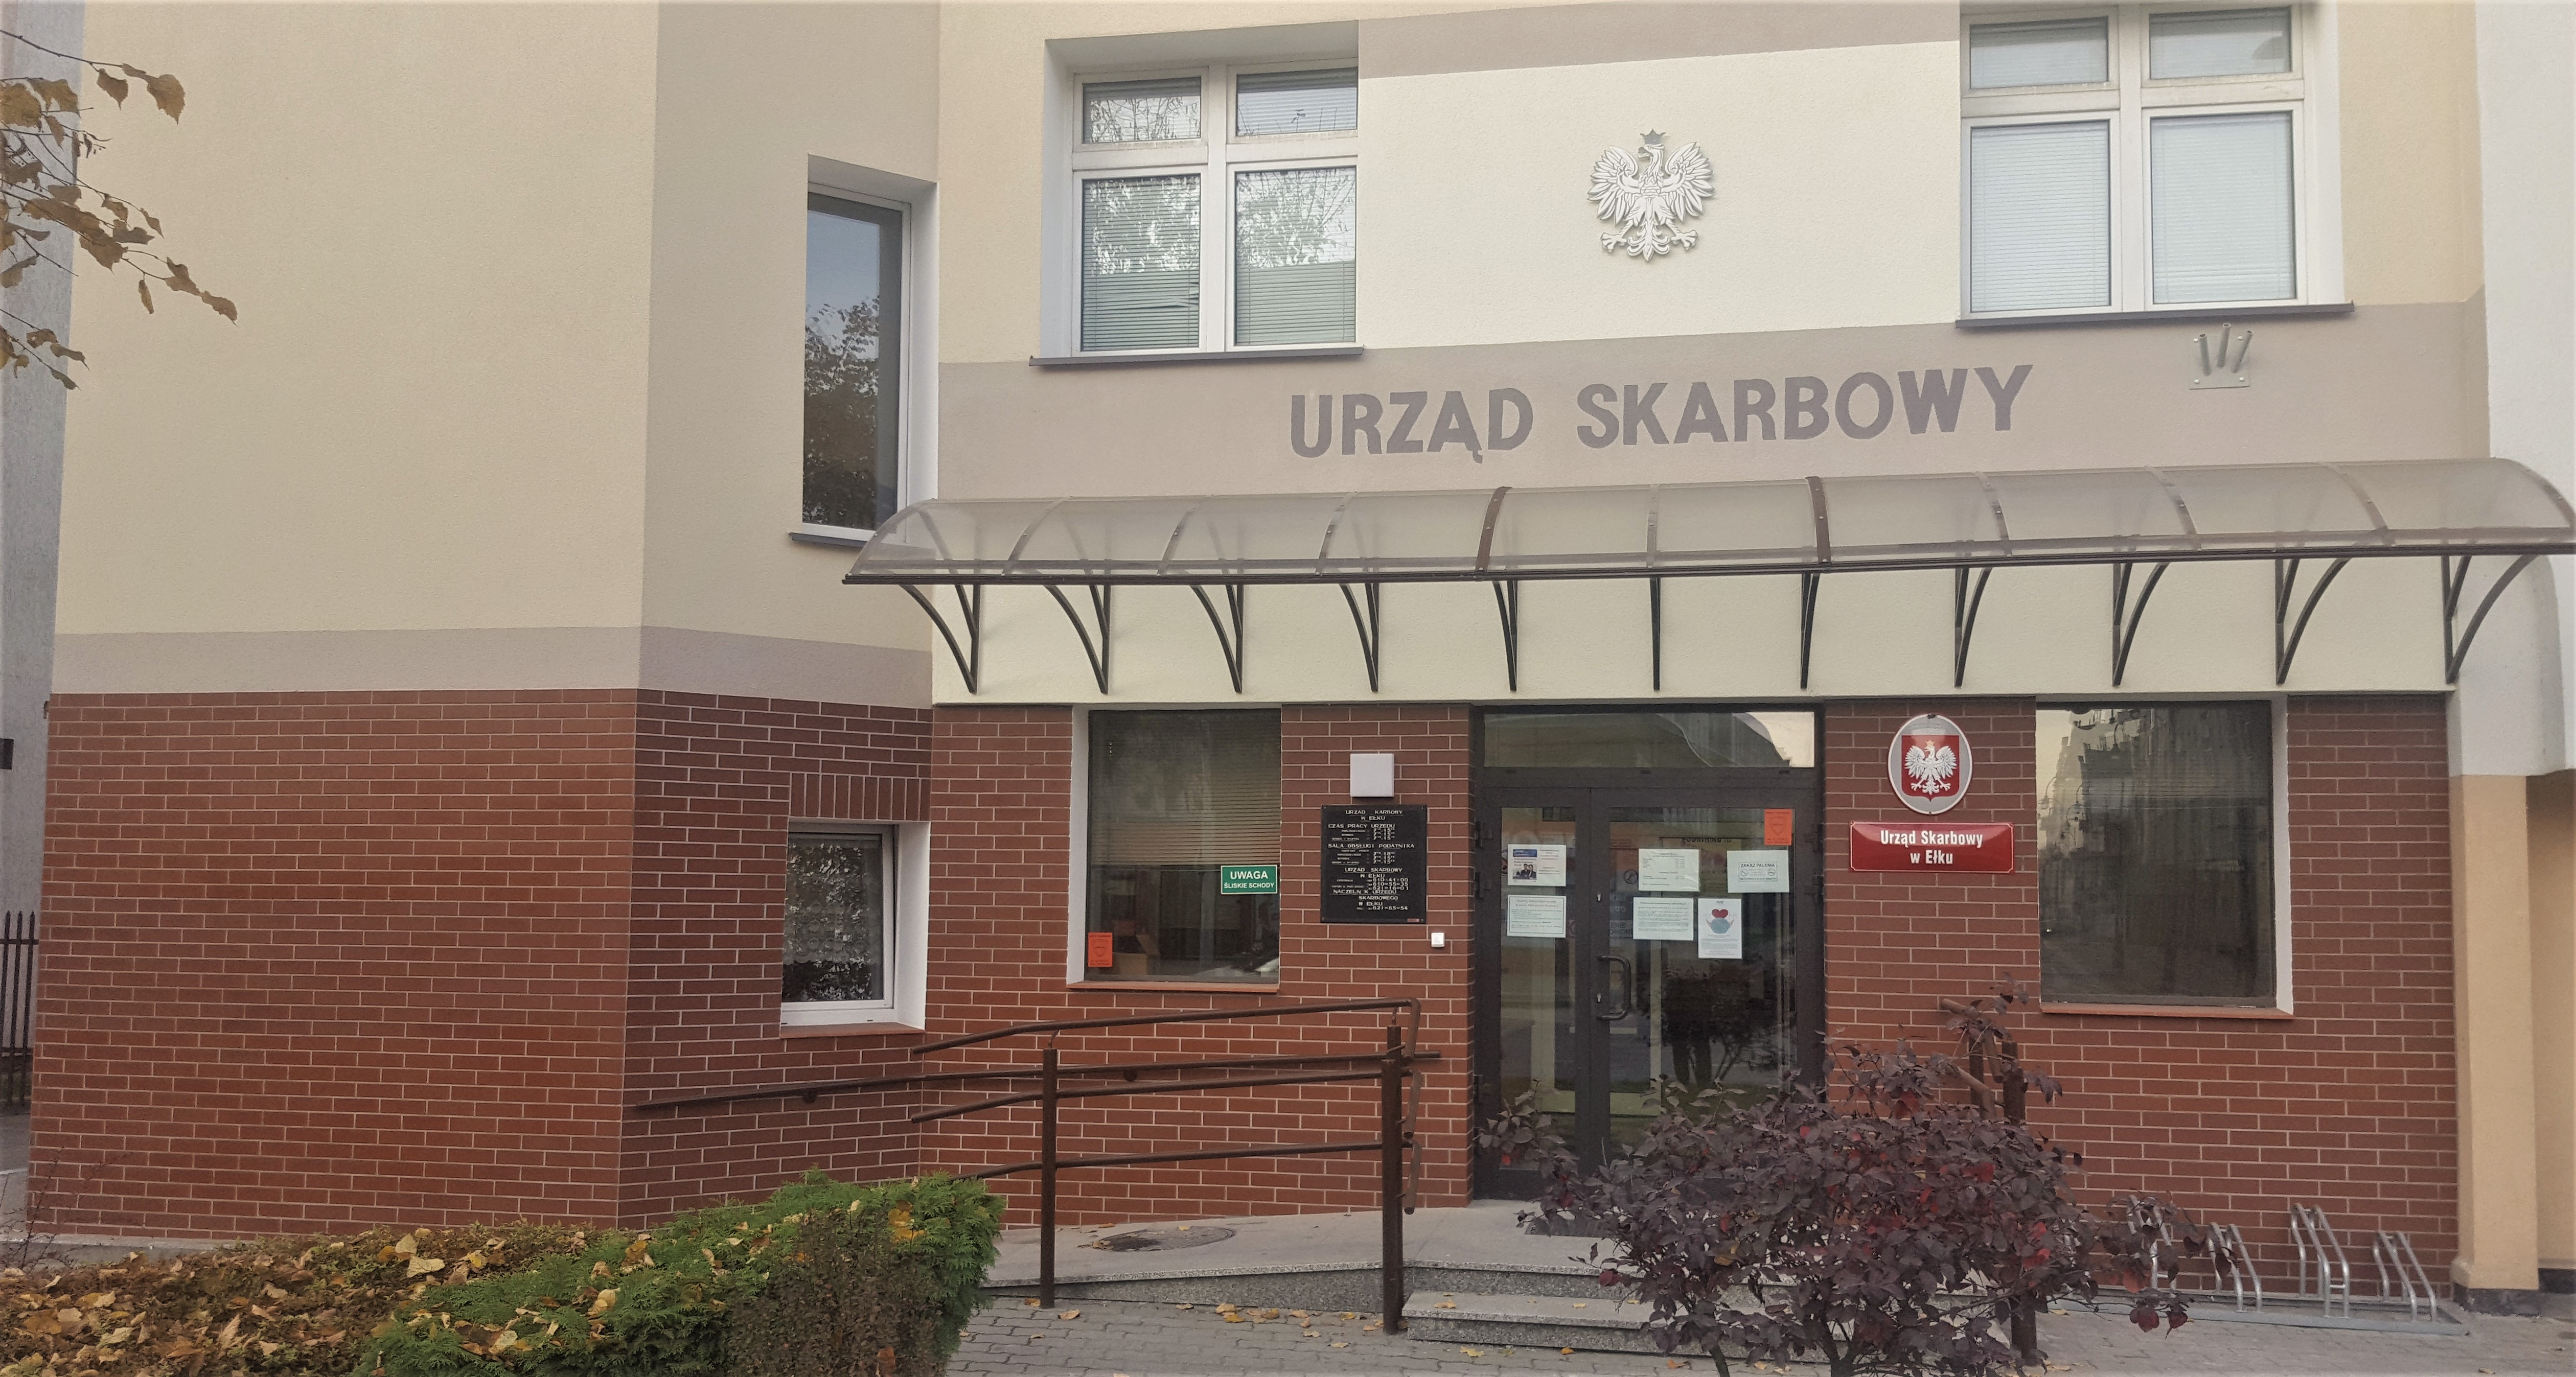 Fasada budynku, w którym znajduje się siedziba Urzędu Skarbowego w Ełku.